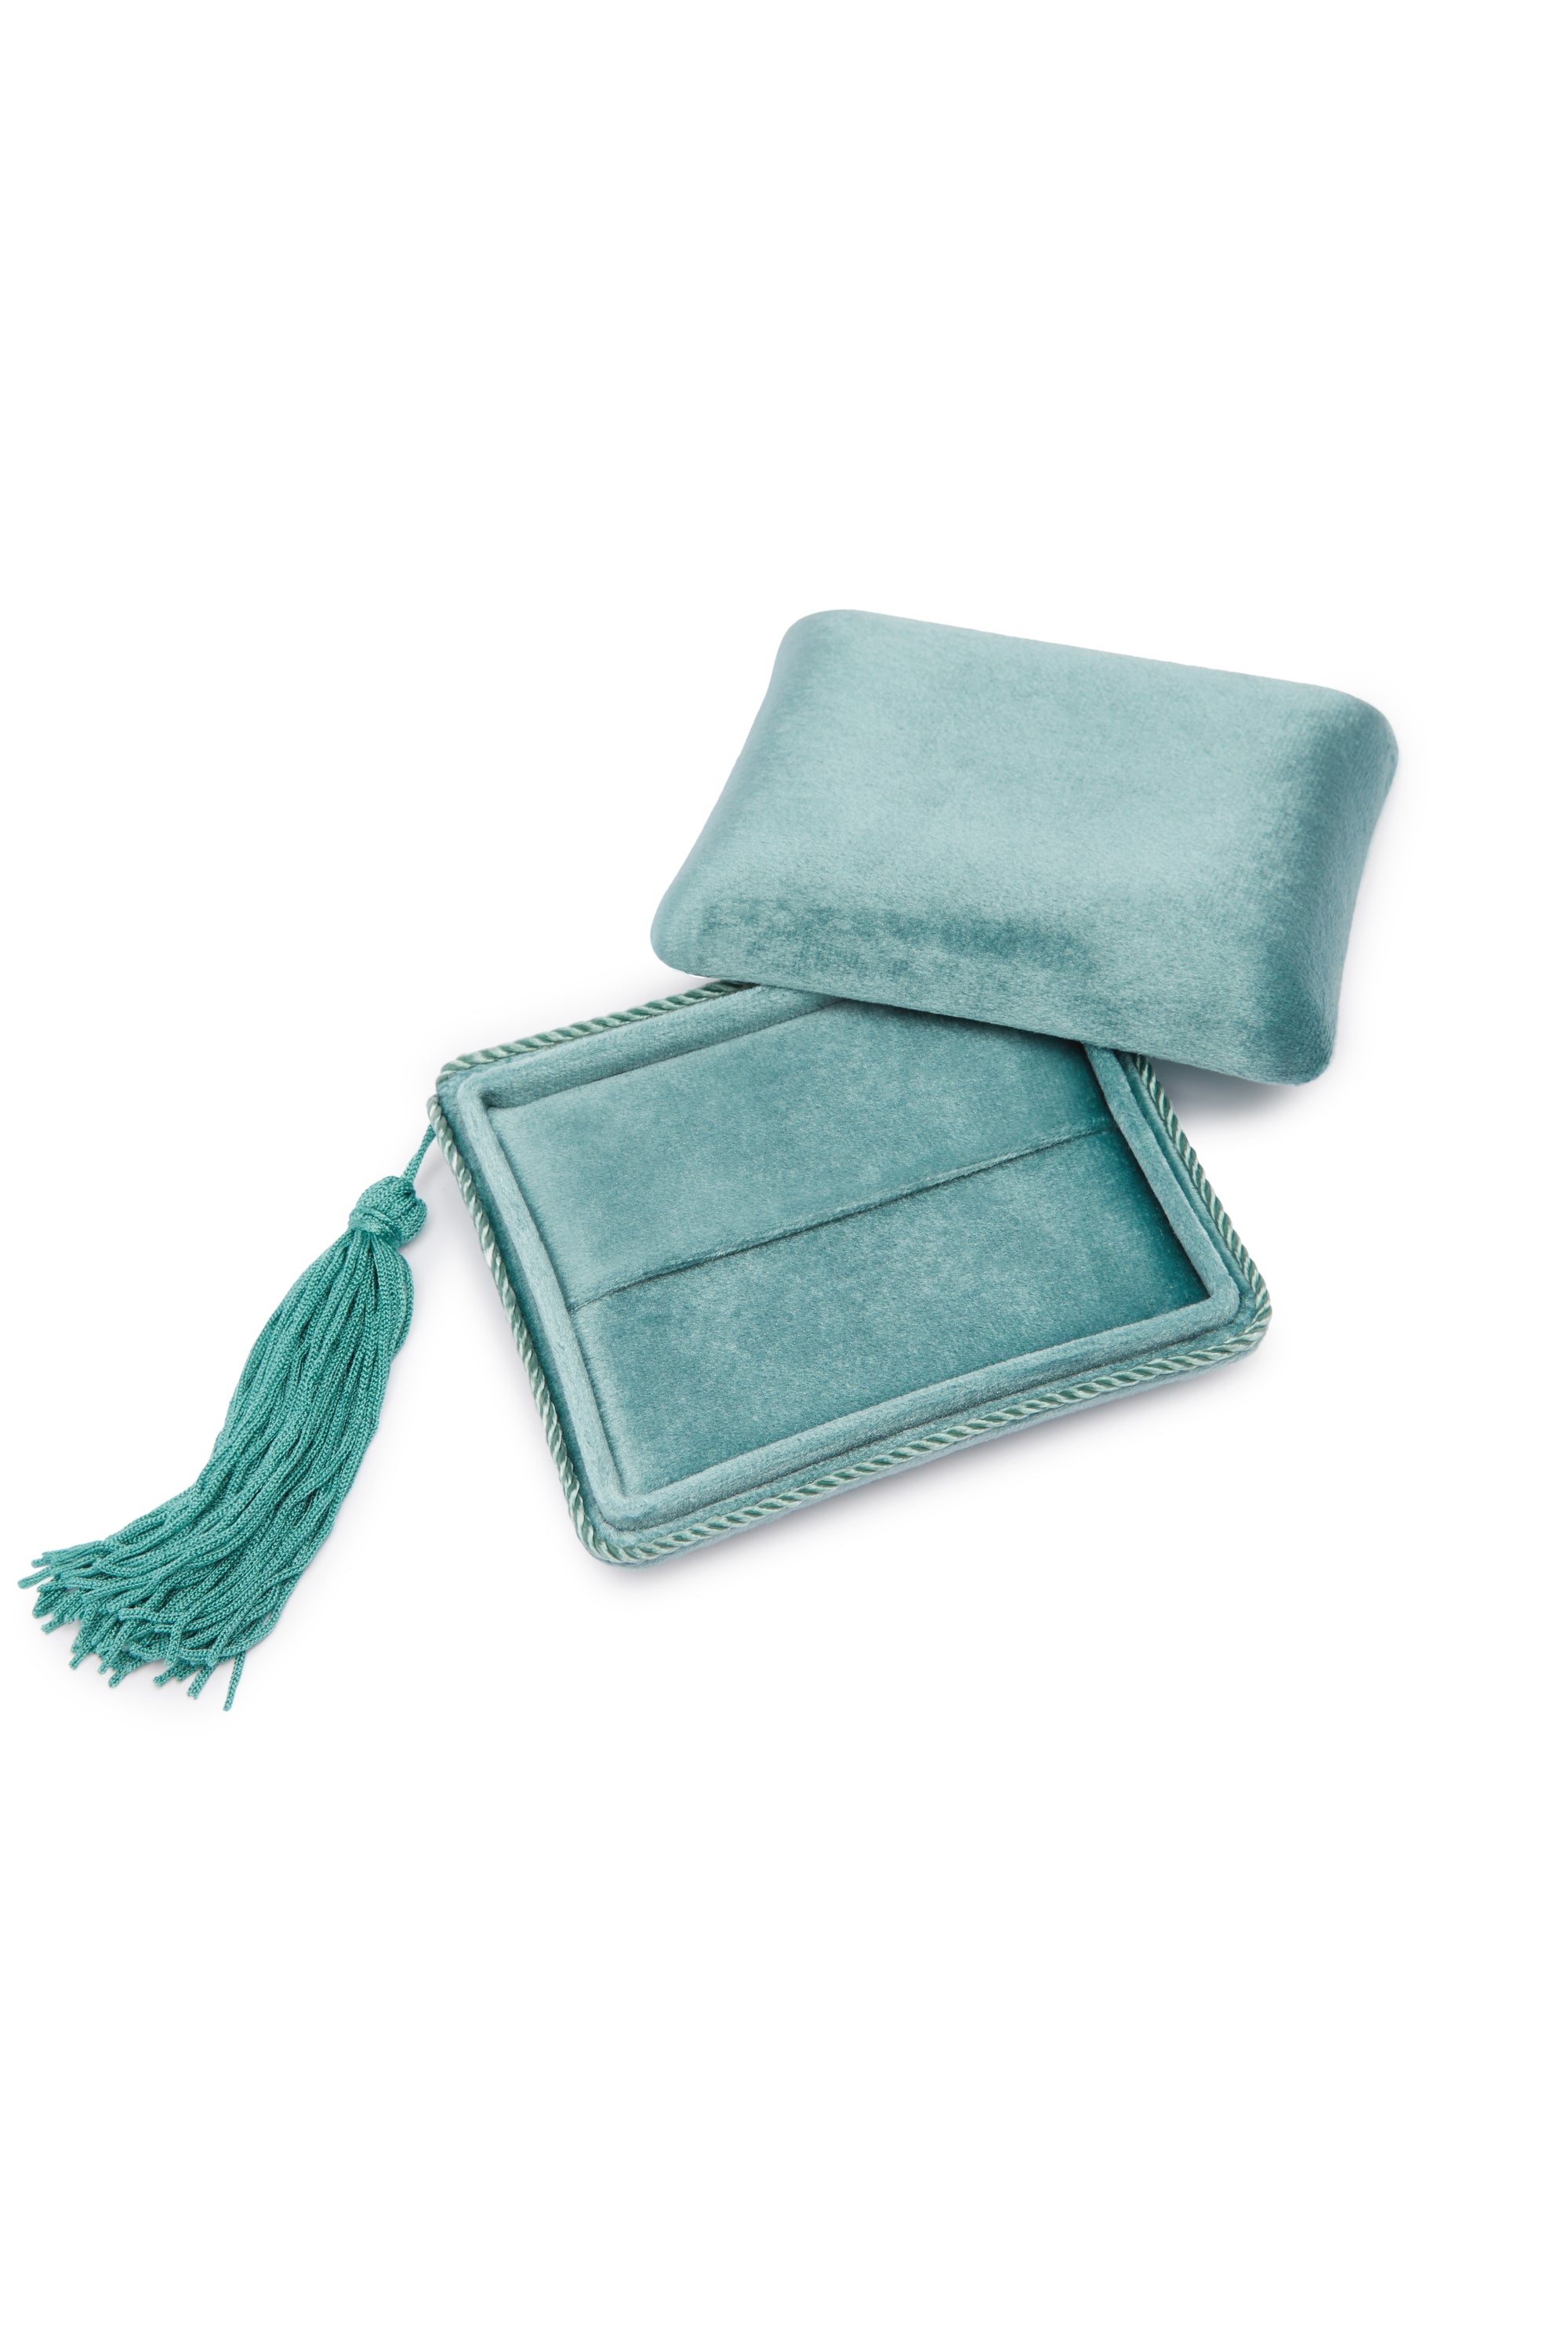 Velvet Jewel box - Turquoise